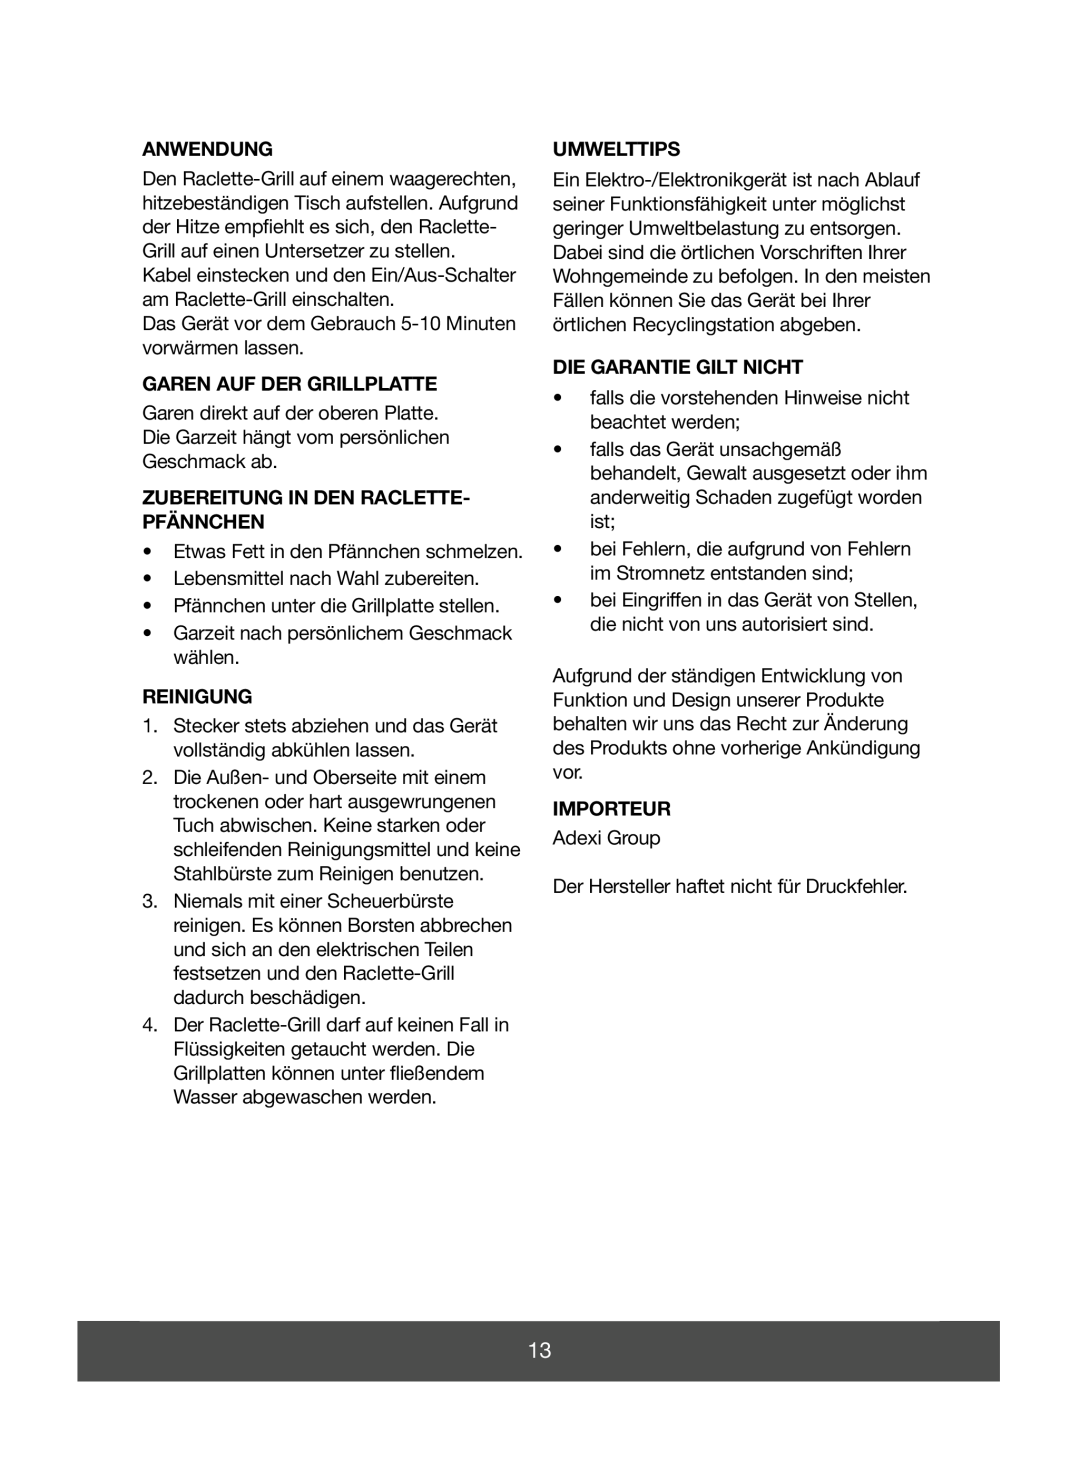 Melissa 643-052 manual Anwendung, Garen Auf Der Grillplatte, Zubereitung In Den Raclette- Pfännchen, Reinigung, Umwelttips 